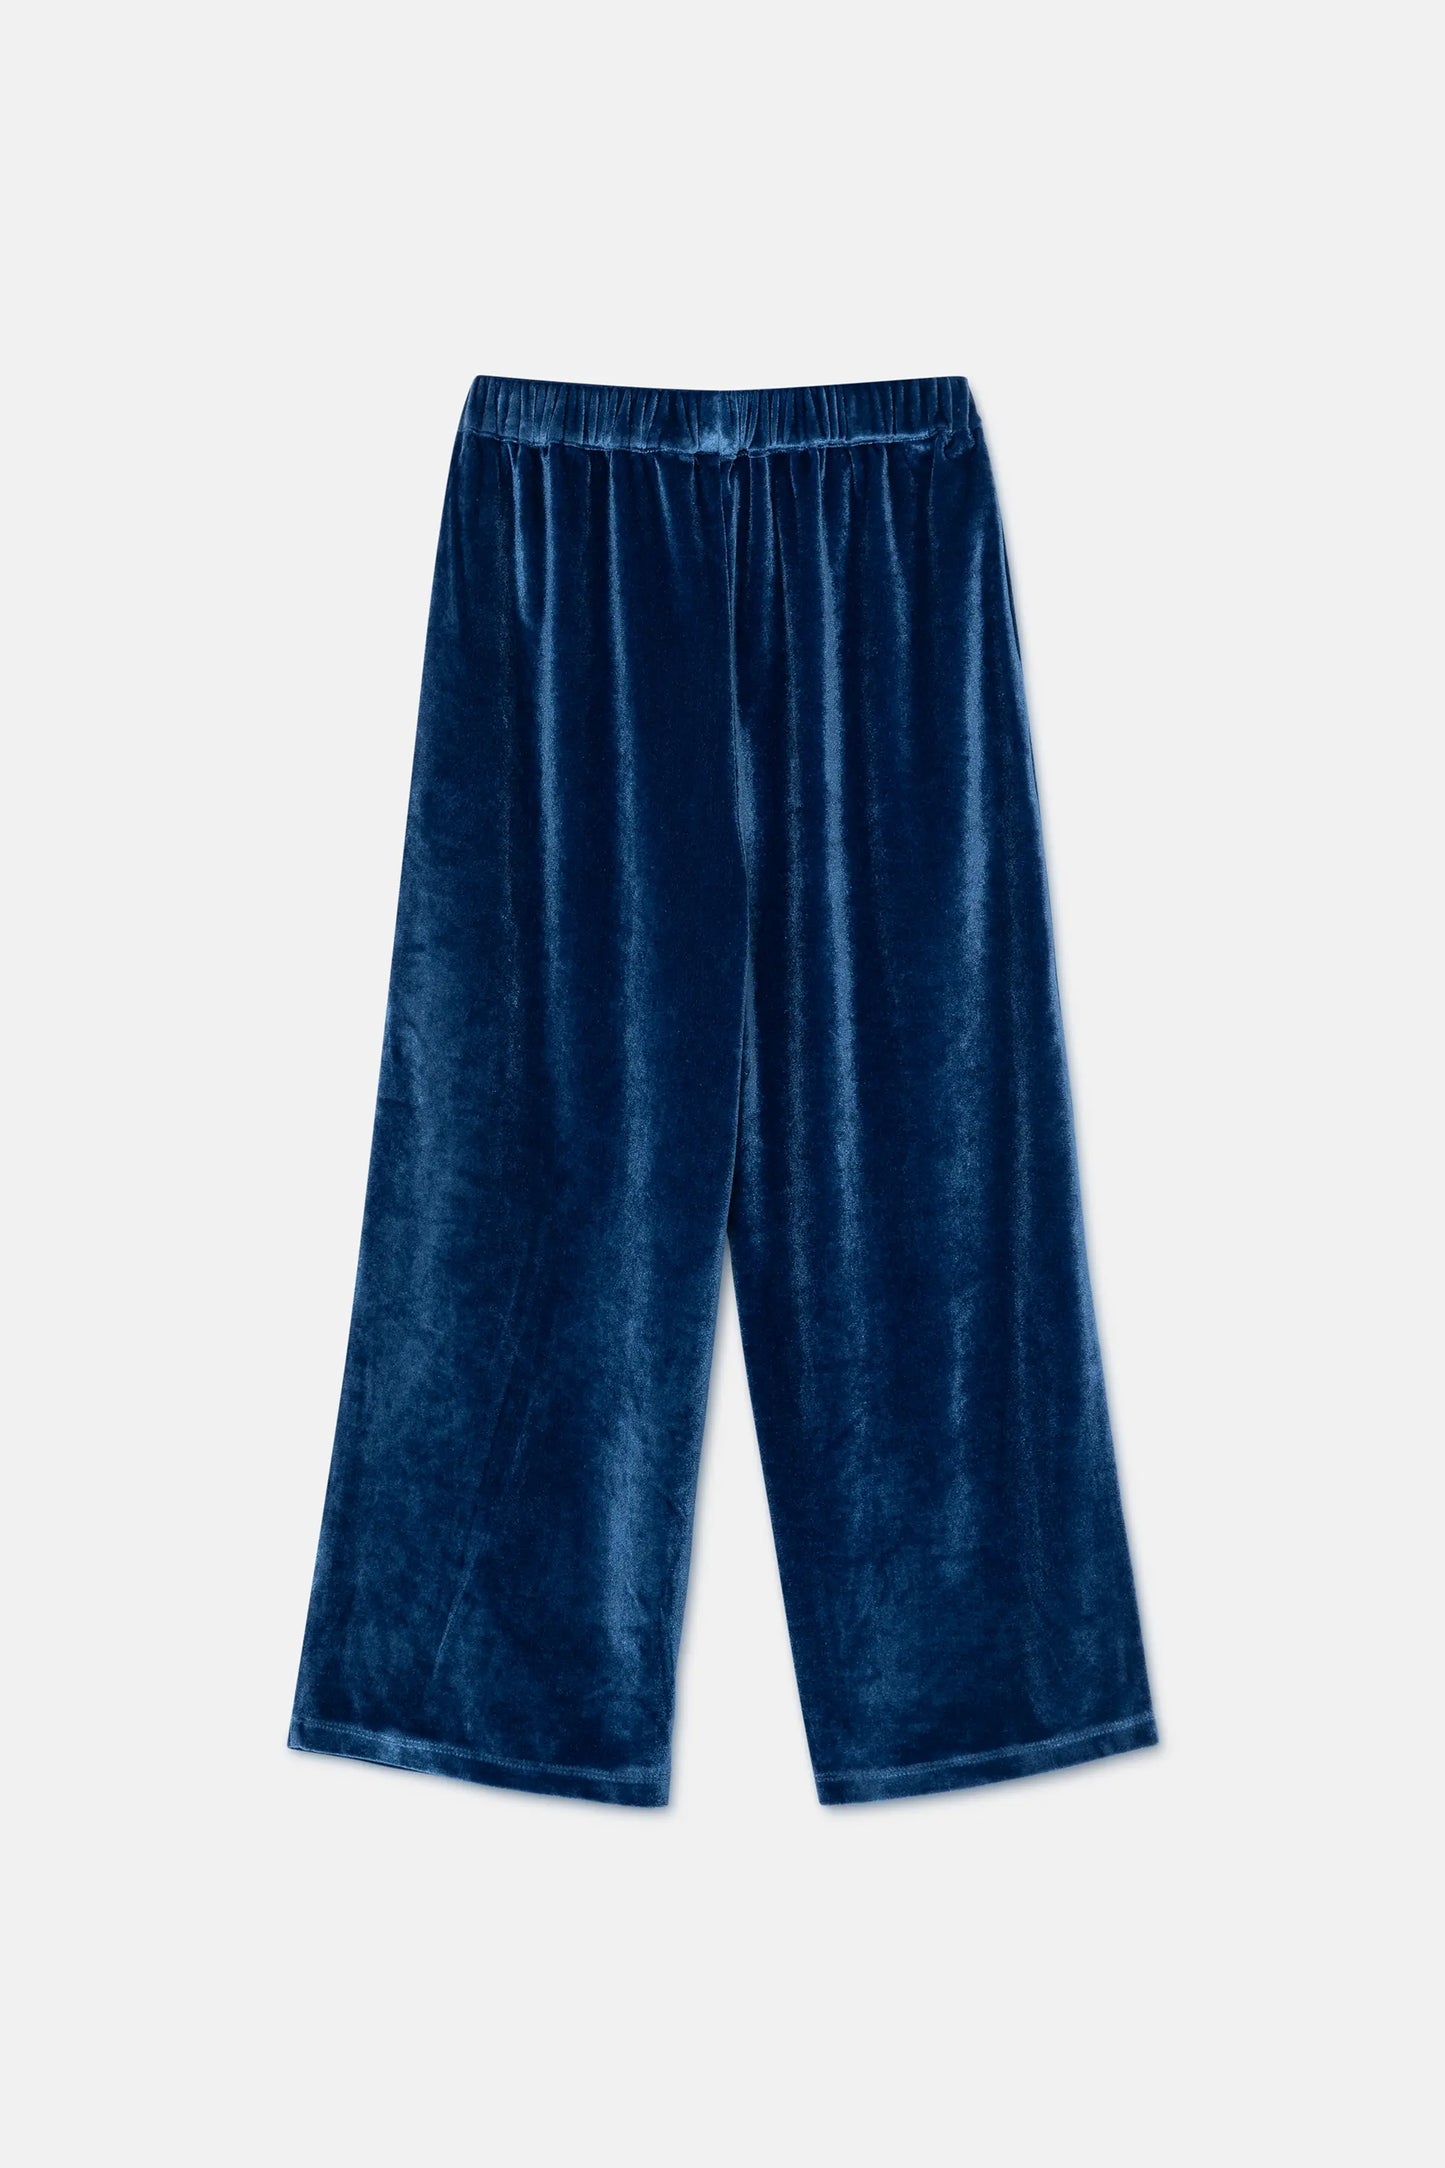 Pantalón unisex en terciopelo azul